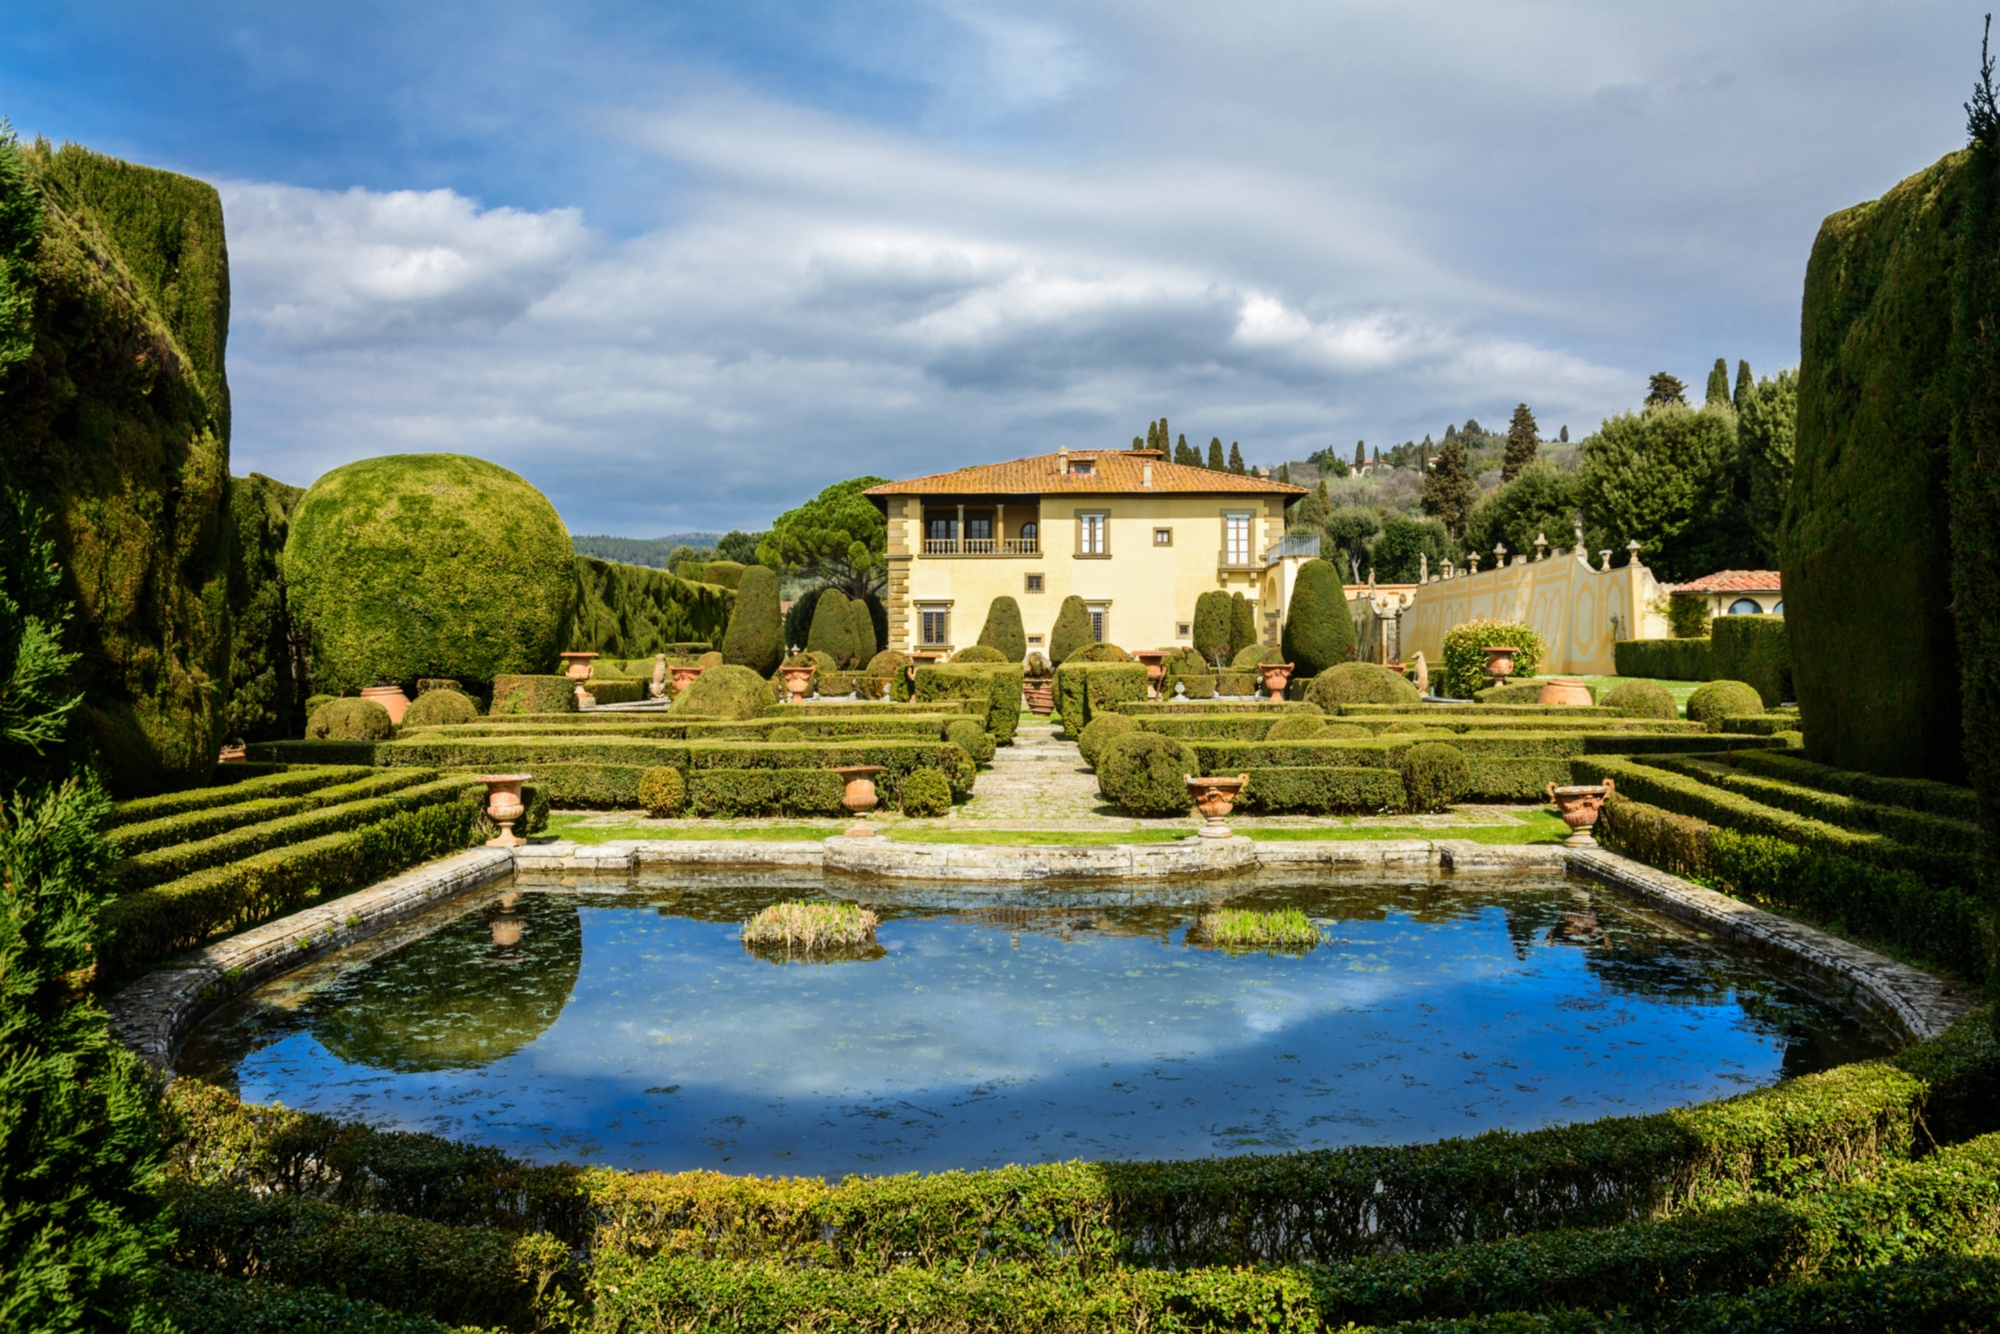 Villa Gamberaia with a lake and gardens, near the city of Settignano